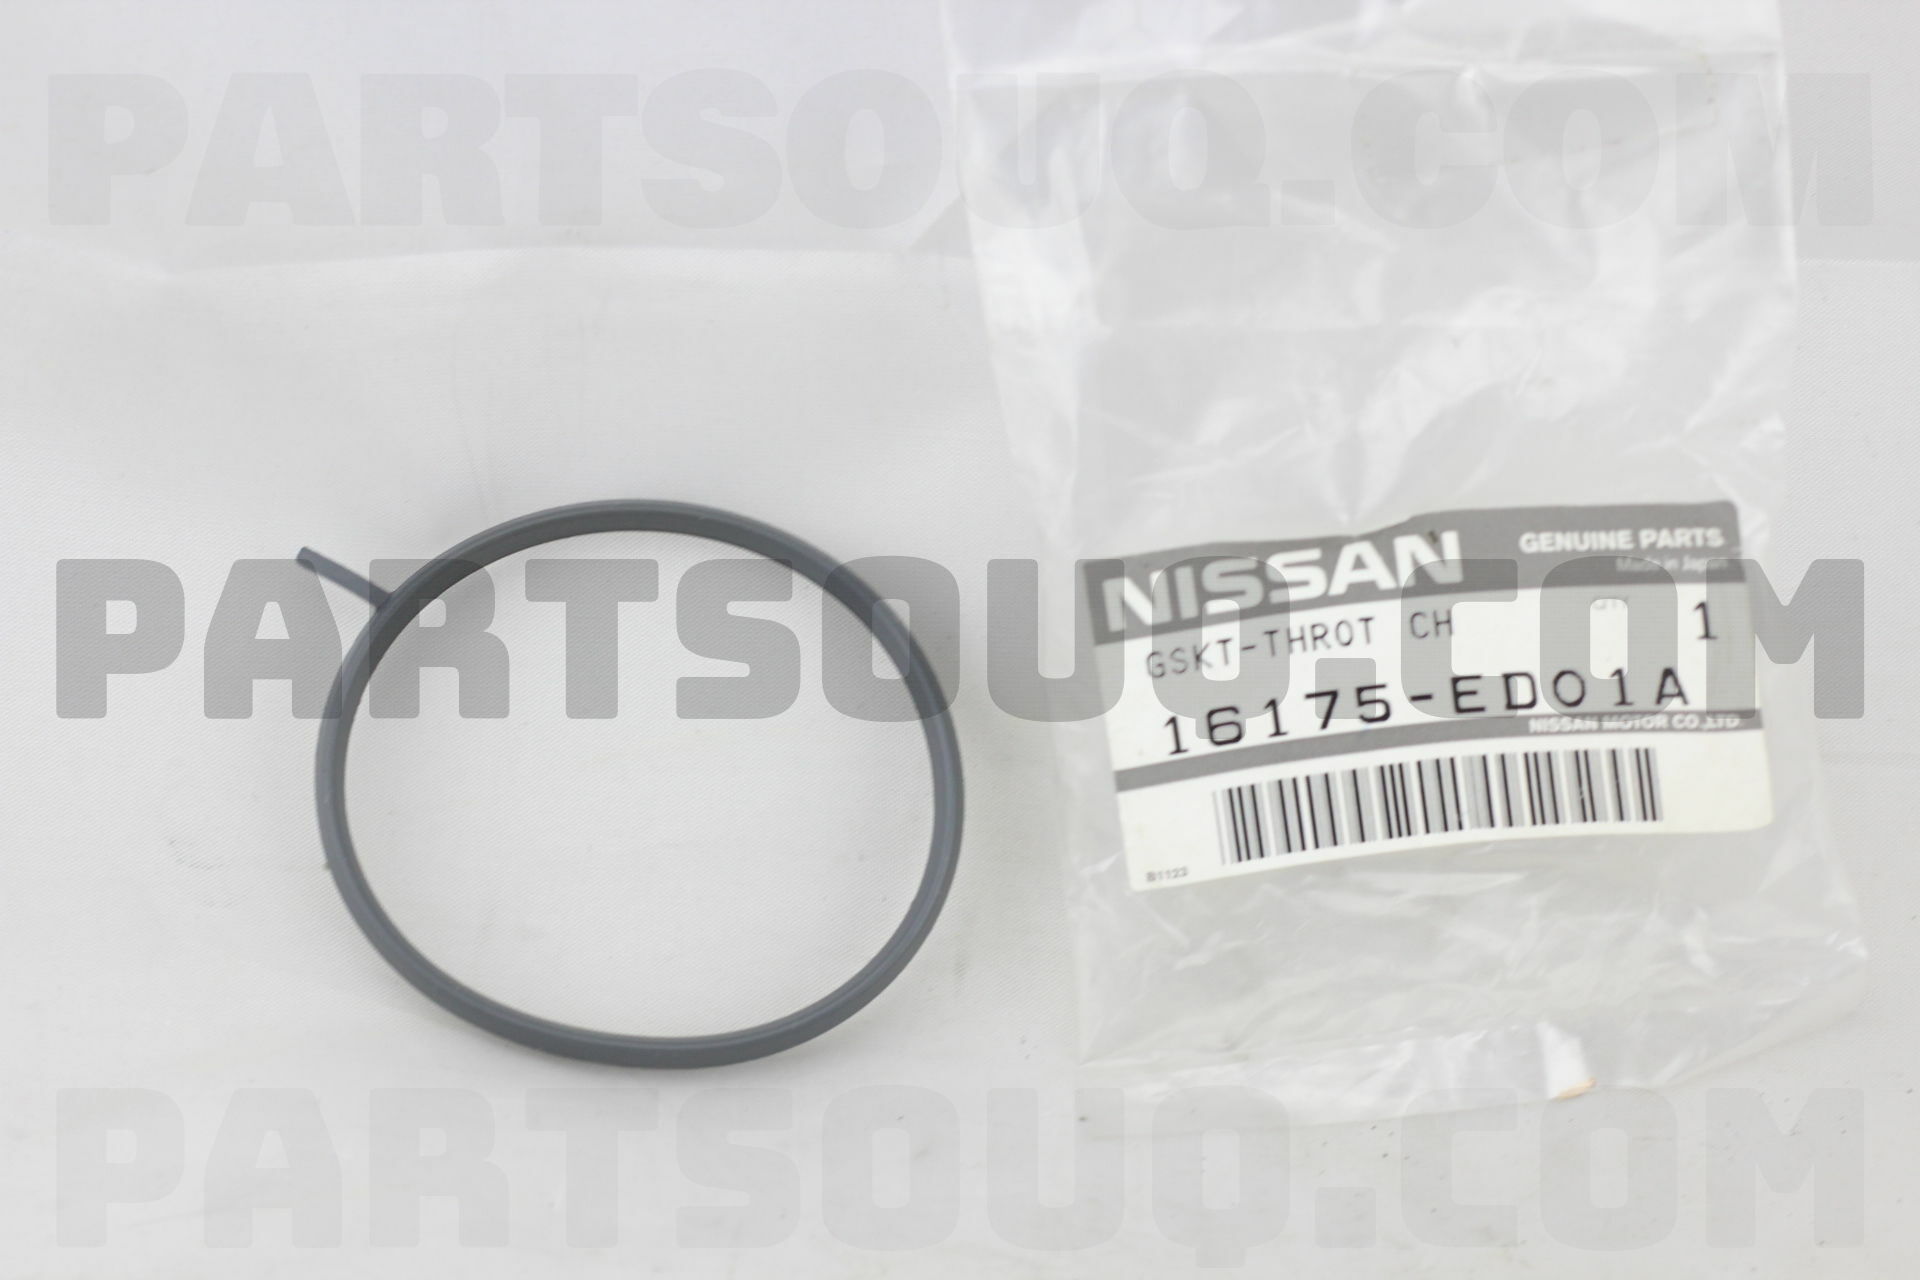 K GSKT-THROT CH 161751HC5A | Nissan Parts | PartSouq